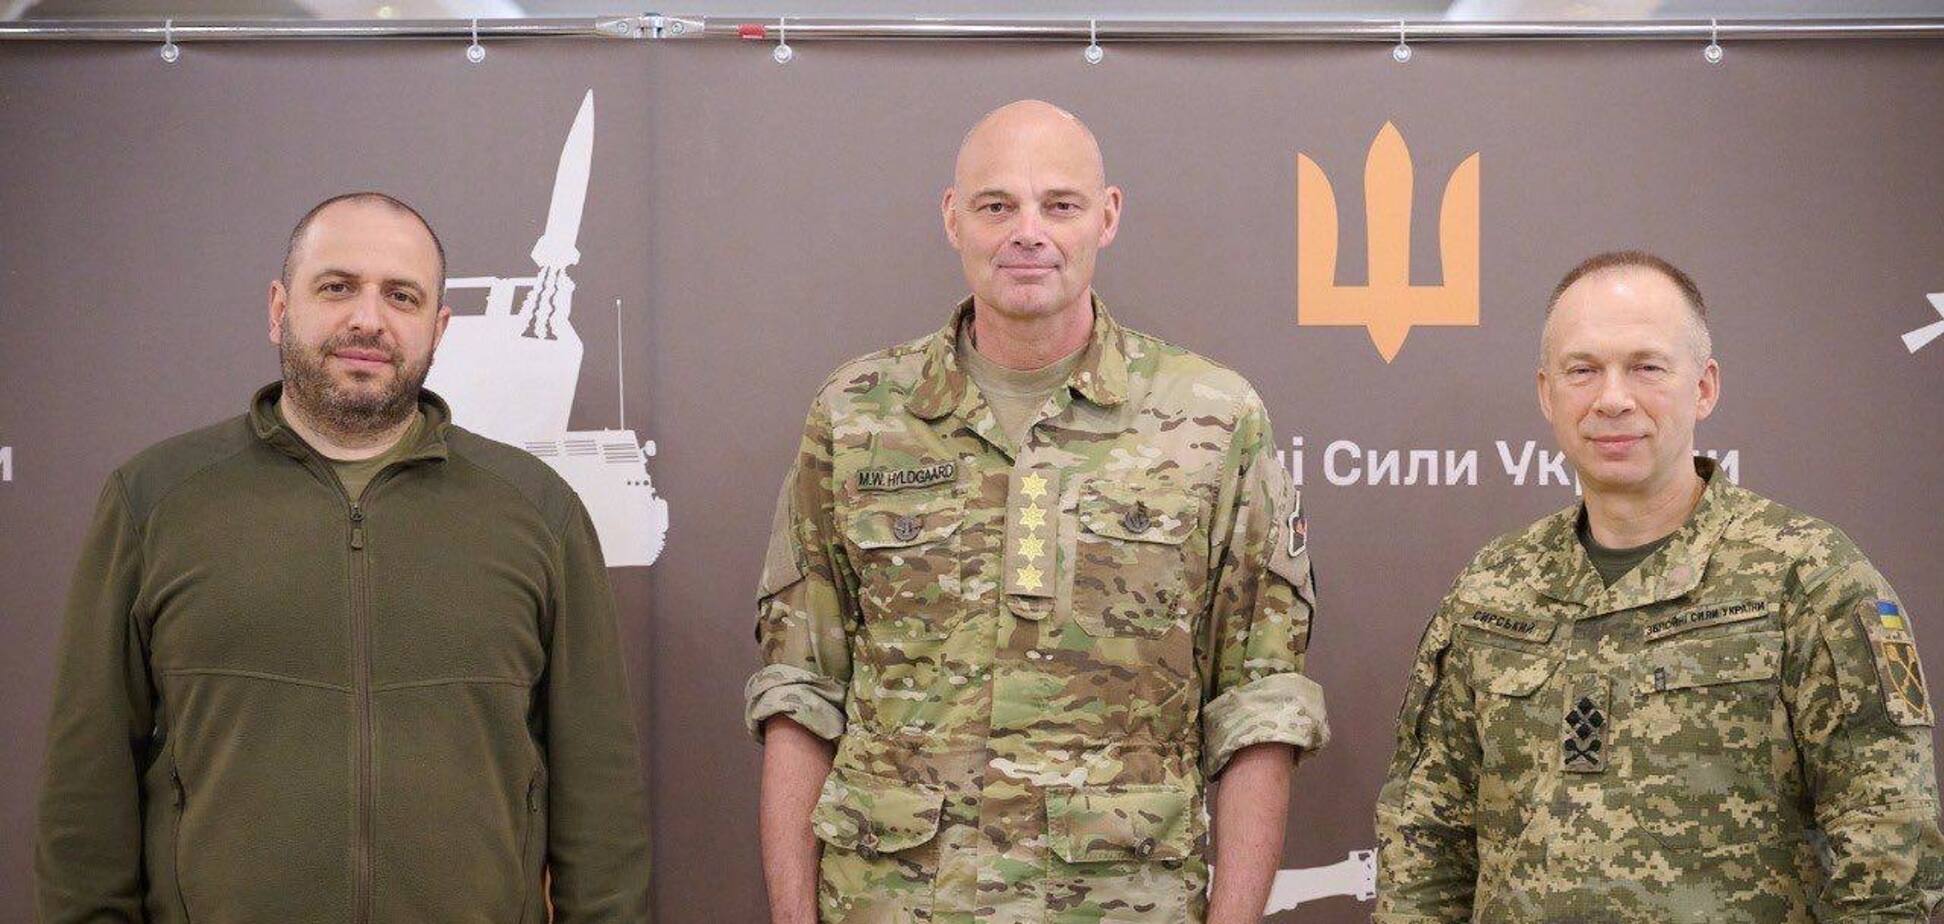 Сырский и Умеров встретились с новым командующим армией Дании: появились подробности. Фото